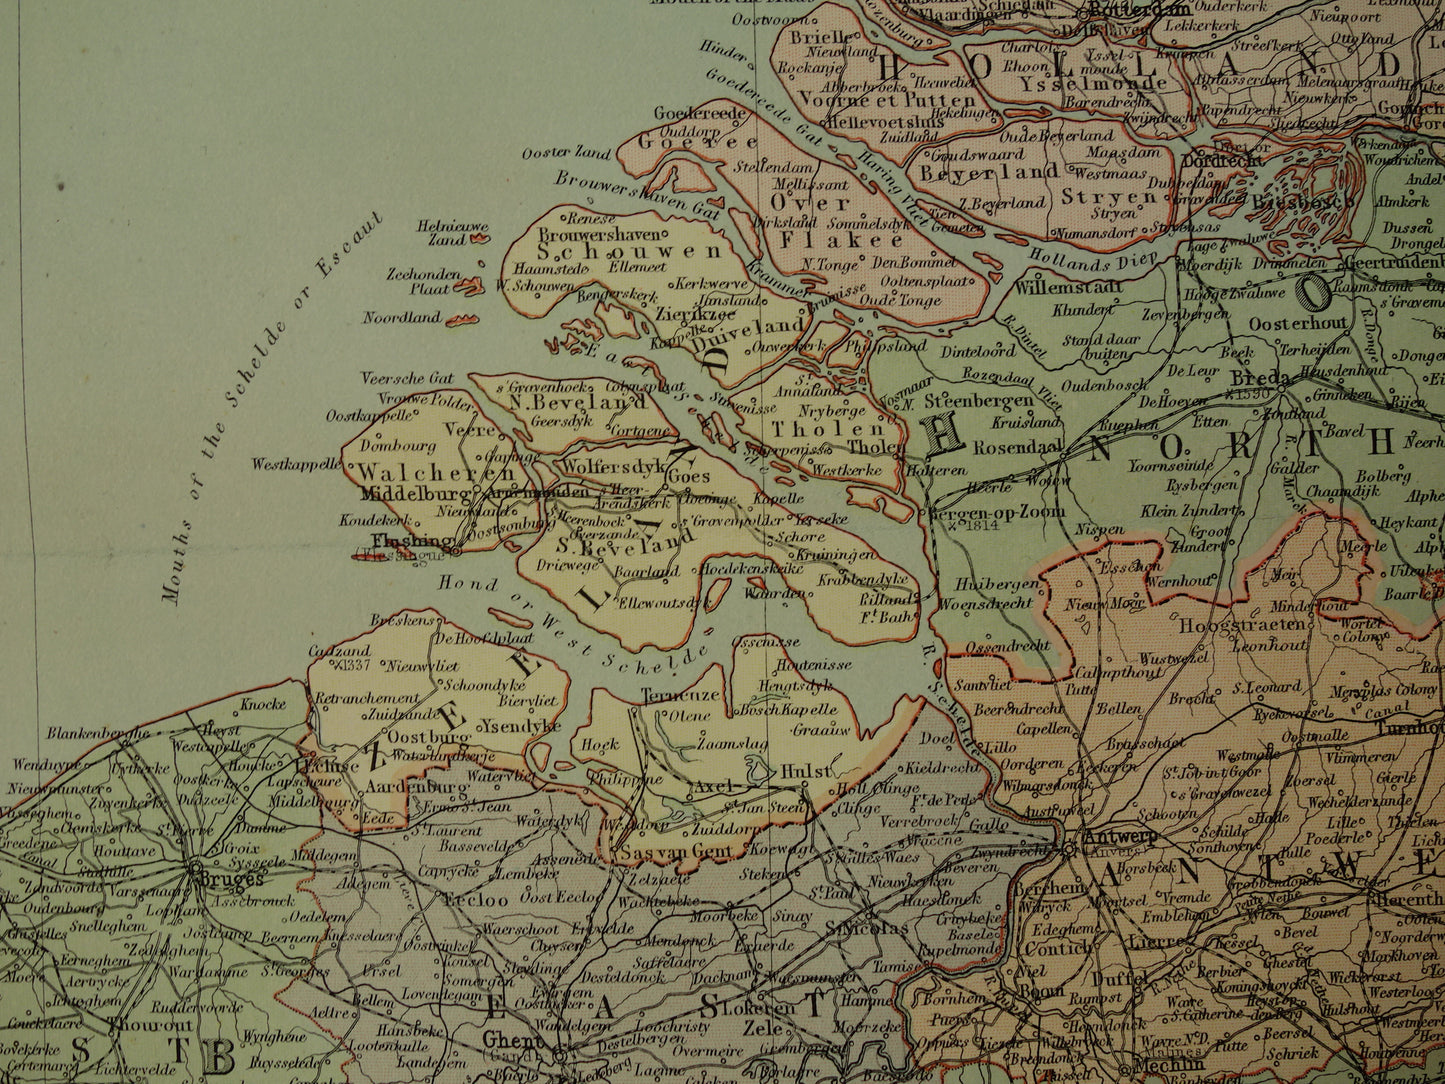 Nederland Belgie China oude landkaarten te koop groot formaat